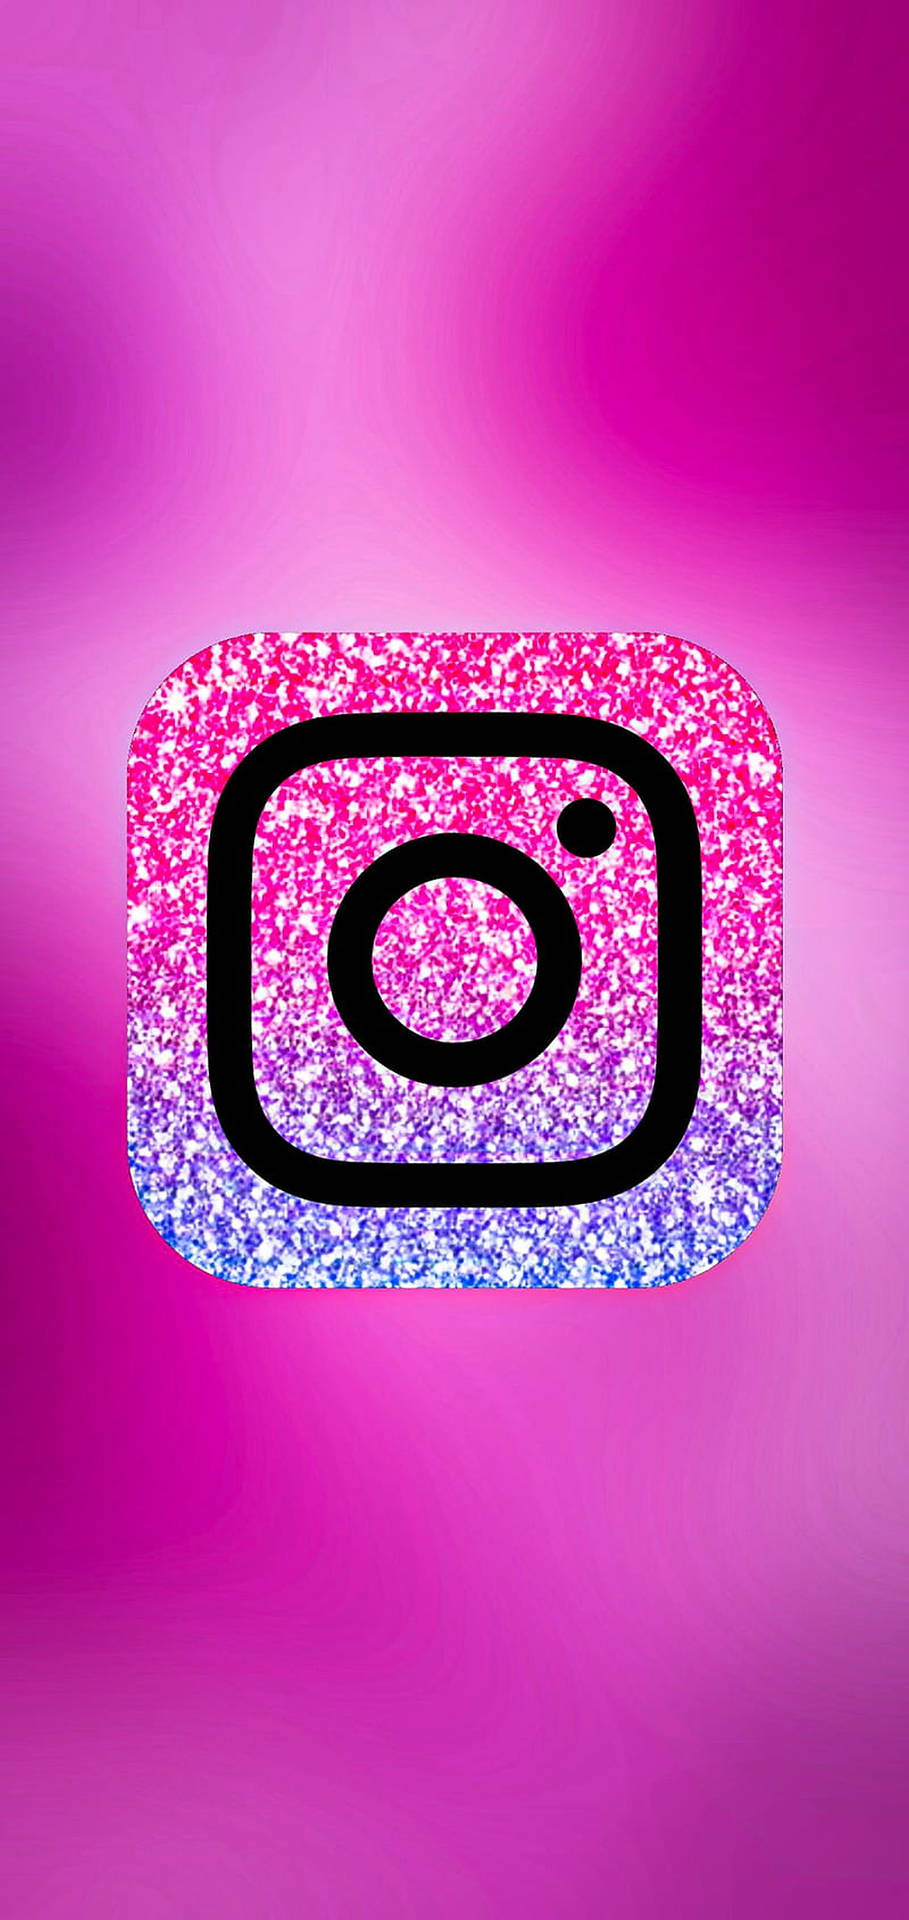 310 Instagram ý tưởng  hình ảnh icon design hình xăm nhỏ ở cổ tay